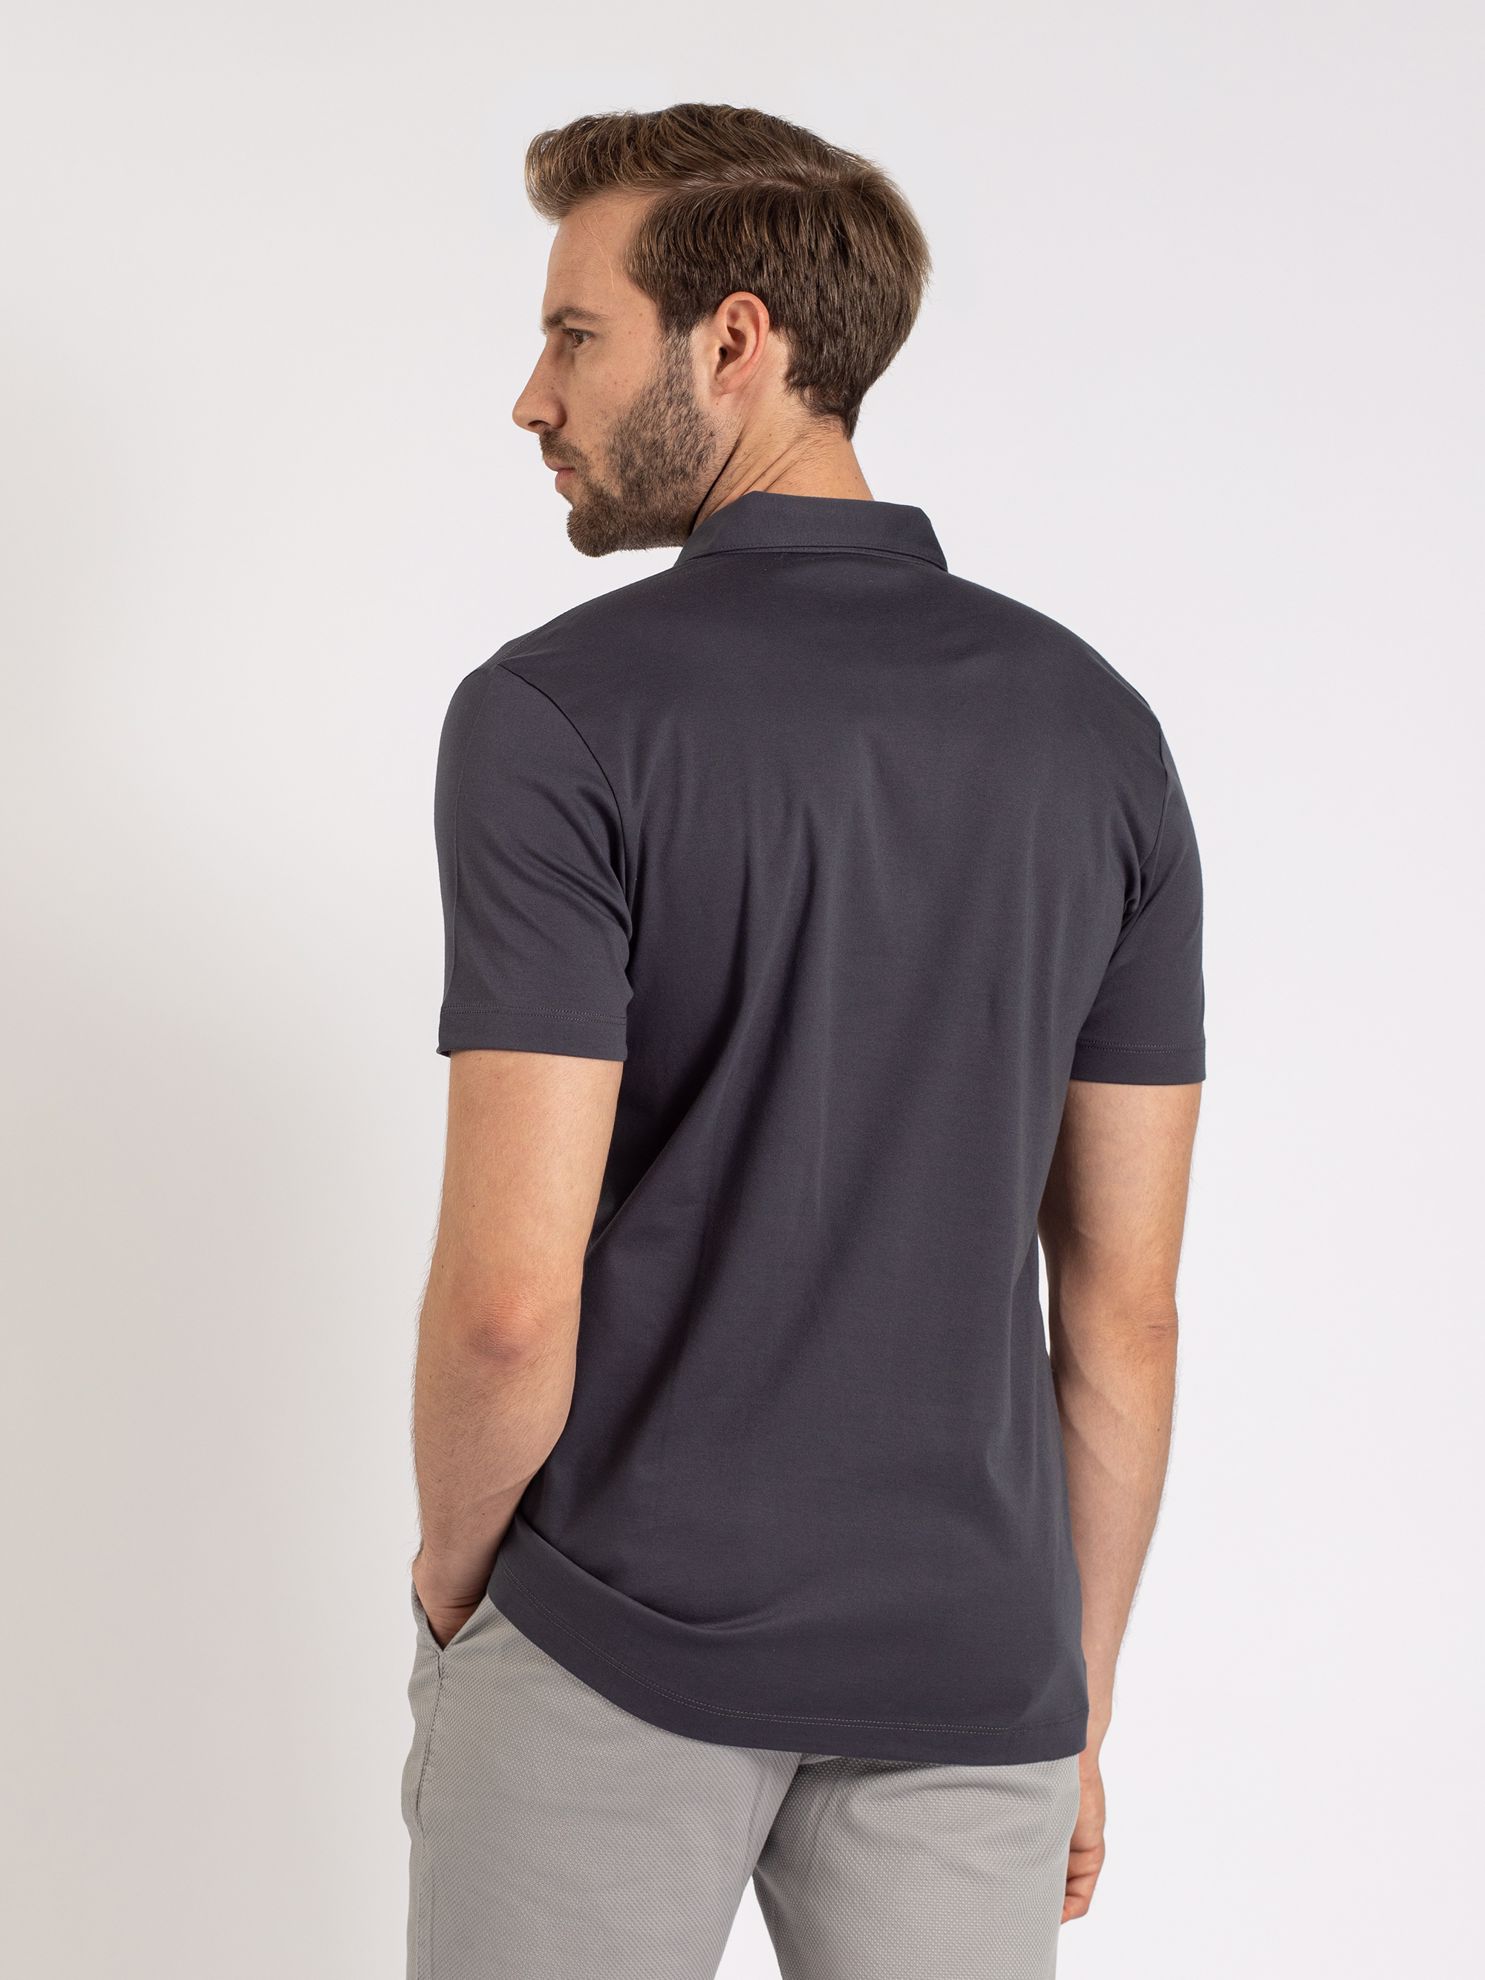 Karaca Erkek Slim Fit Polo Yaka Tişört-Antrasit. ürün görseli